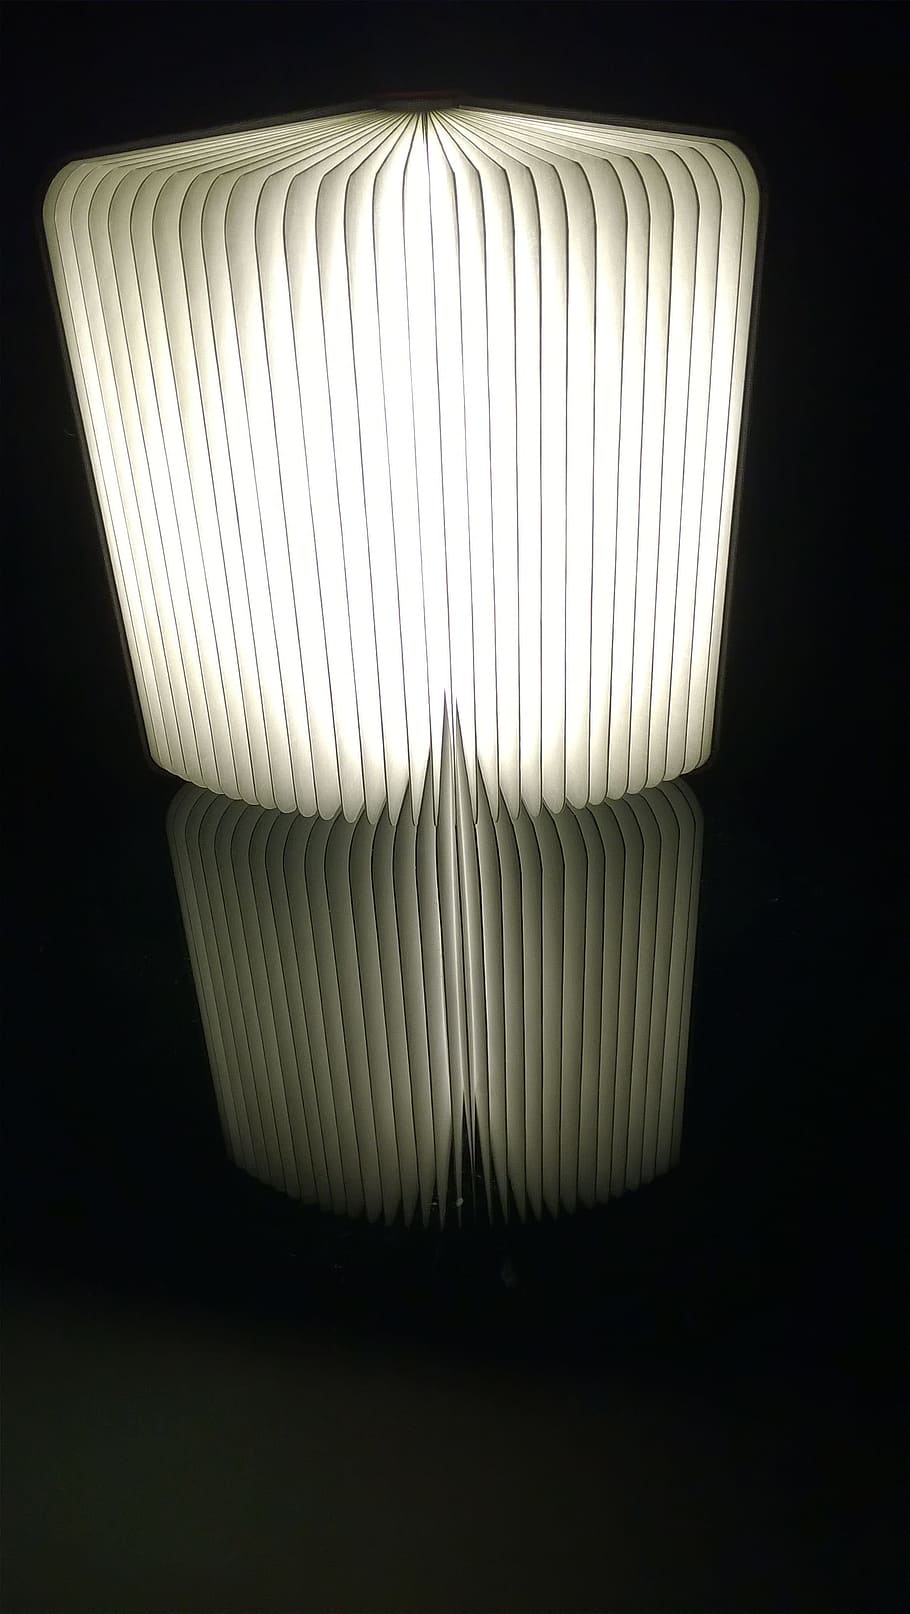 ランプ, ライト, 電球, 黒い背景, 屋内, スタジオ撮影, 白い色, 人なし, 単一オブジェクト, パターン